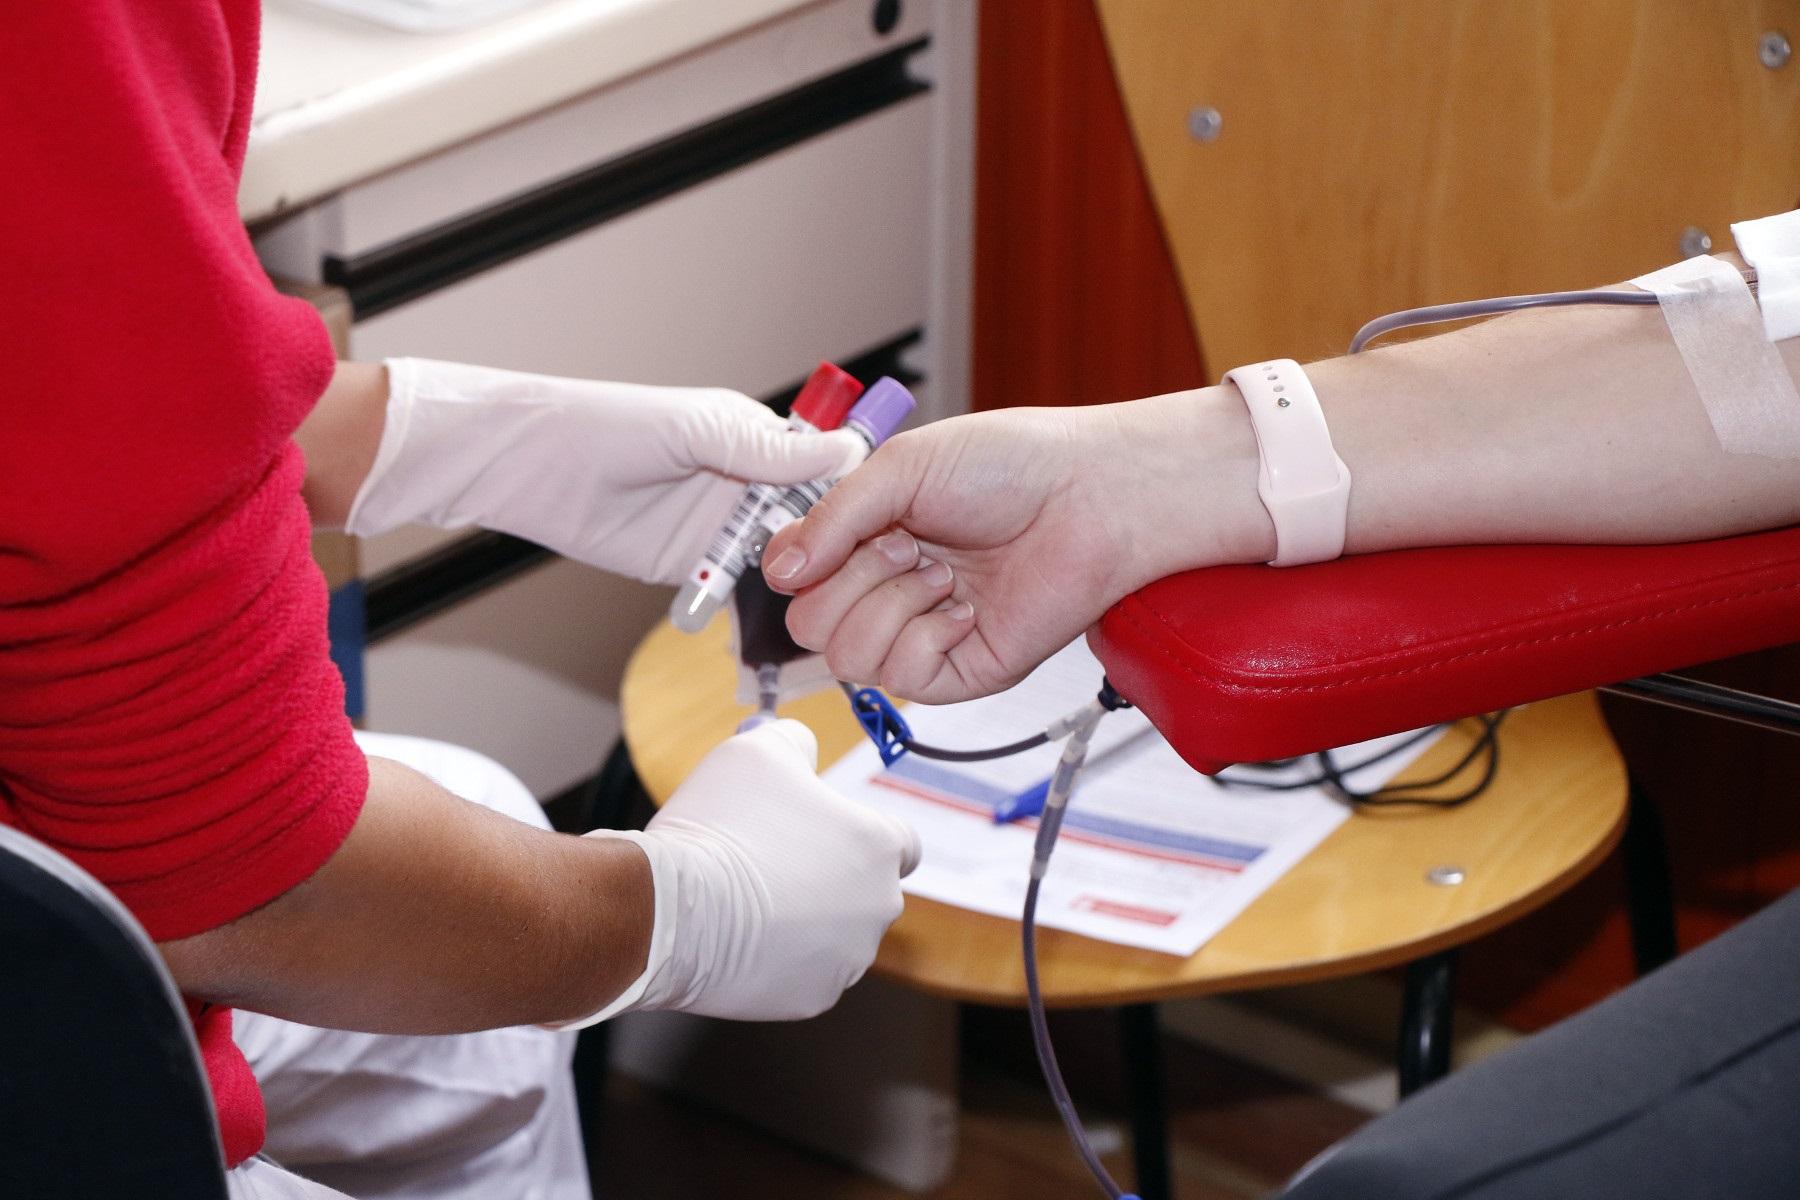 Imagen de archivo de una persona donando sangre. Fuente: Europa Press.